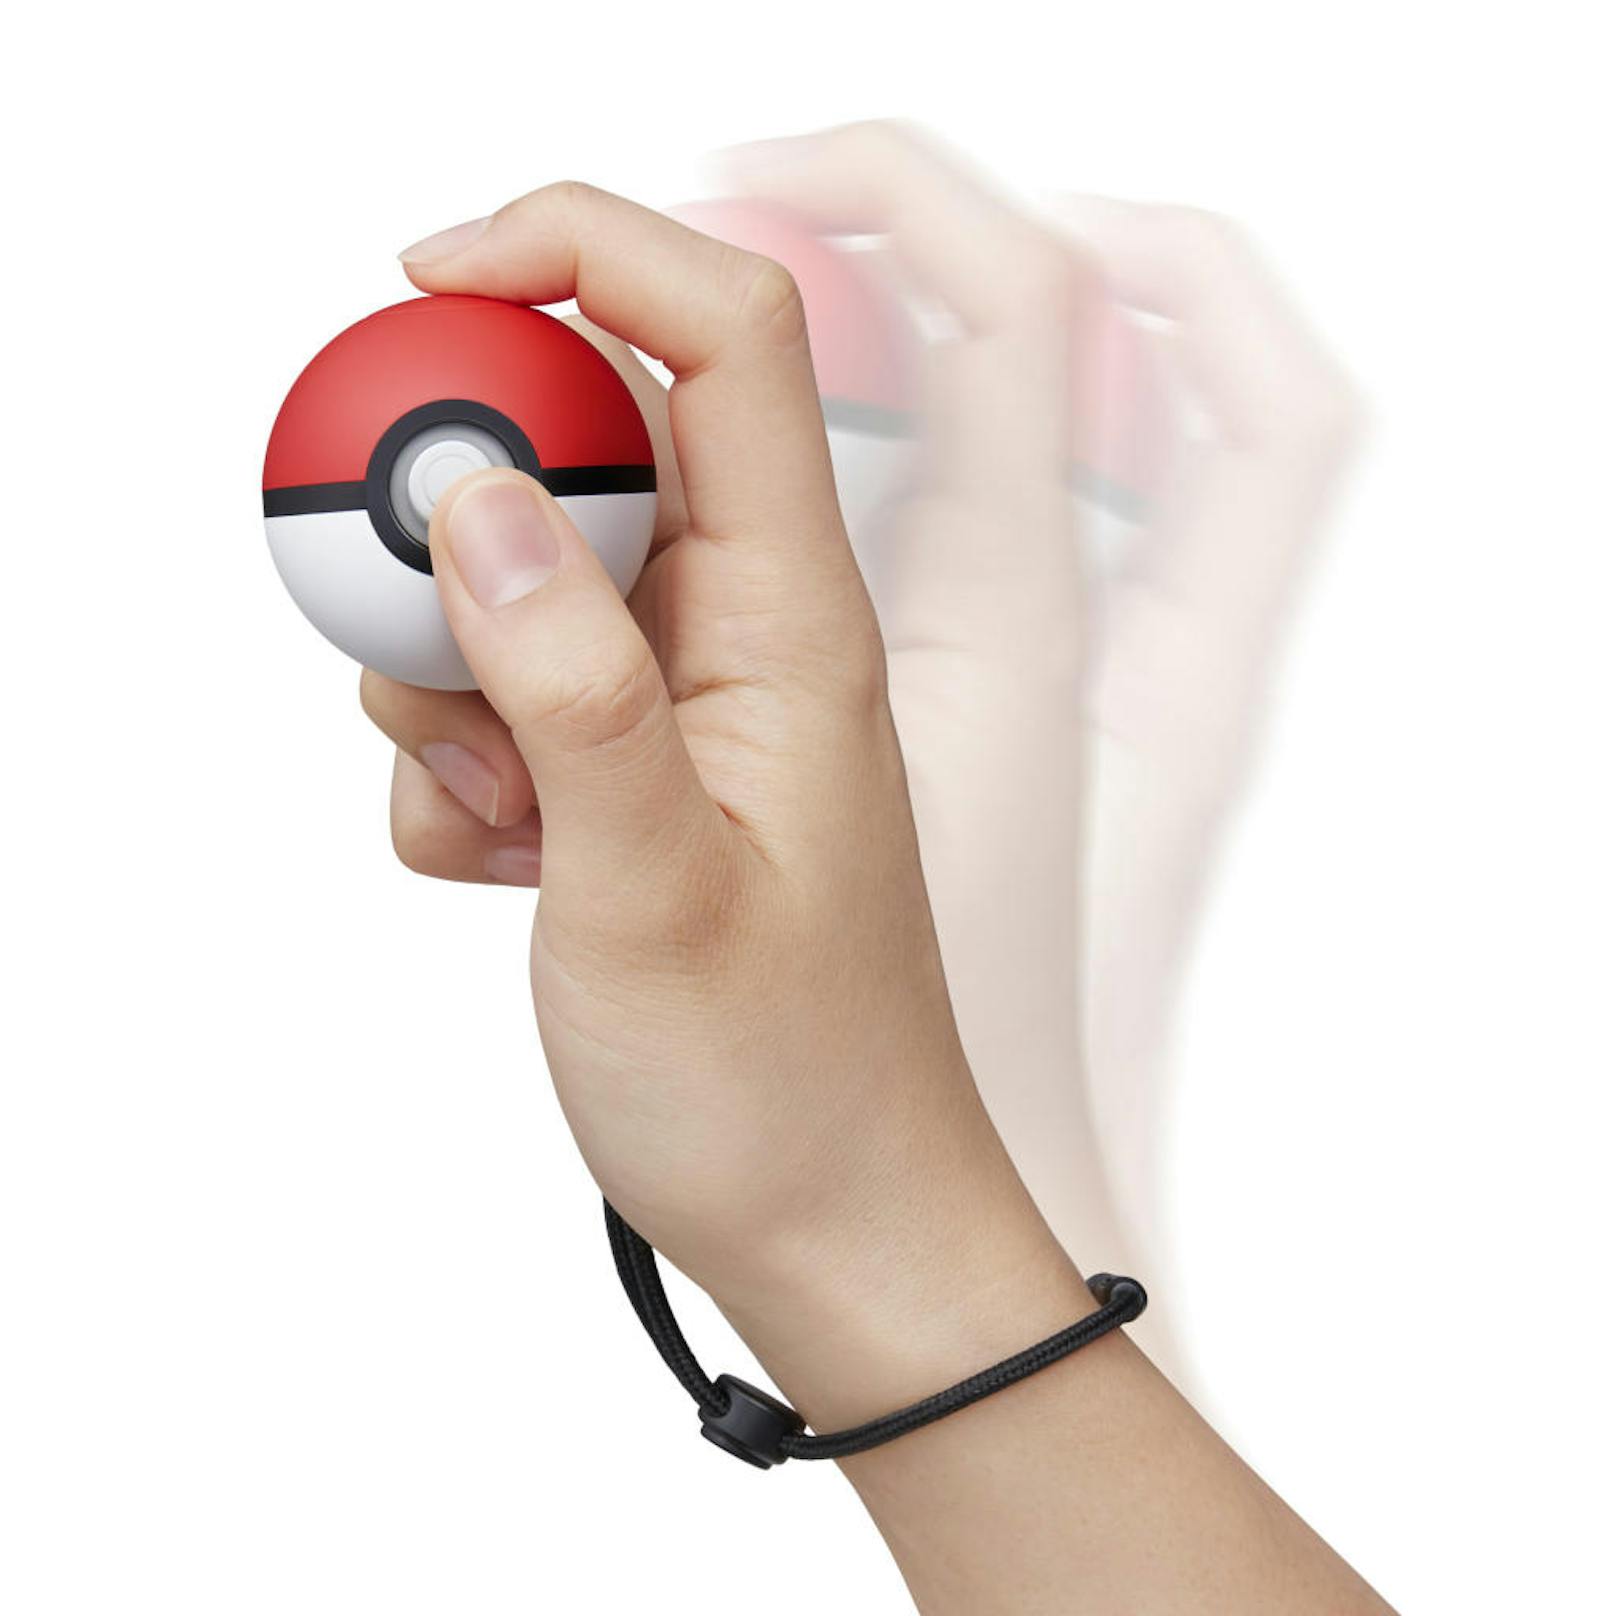 Der Pokéball Plus treibt das einhändige Steuern auf die Spitze. Das kleine Gerät ersetzt einen Controller oder Joy-Con komplett. Der Ball liegt überraschend klein in der Hand eines Erwachsenen, macht das aber durch starken Rumble in Kämpfen oder beim Fangen von Pokémon wieder wett. Außerdem ertönen die Laute des gerade gefangenen Wesens aus dem Inneren des Controllers.